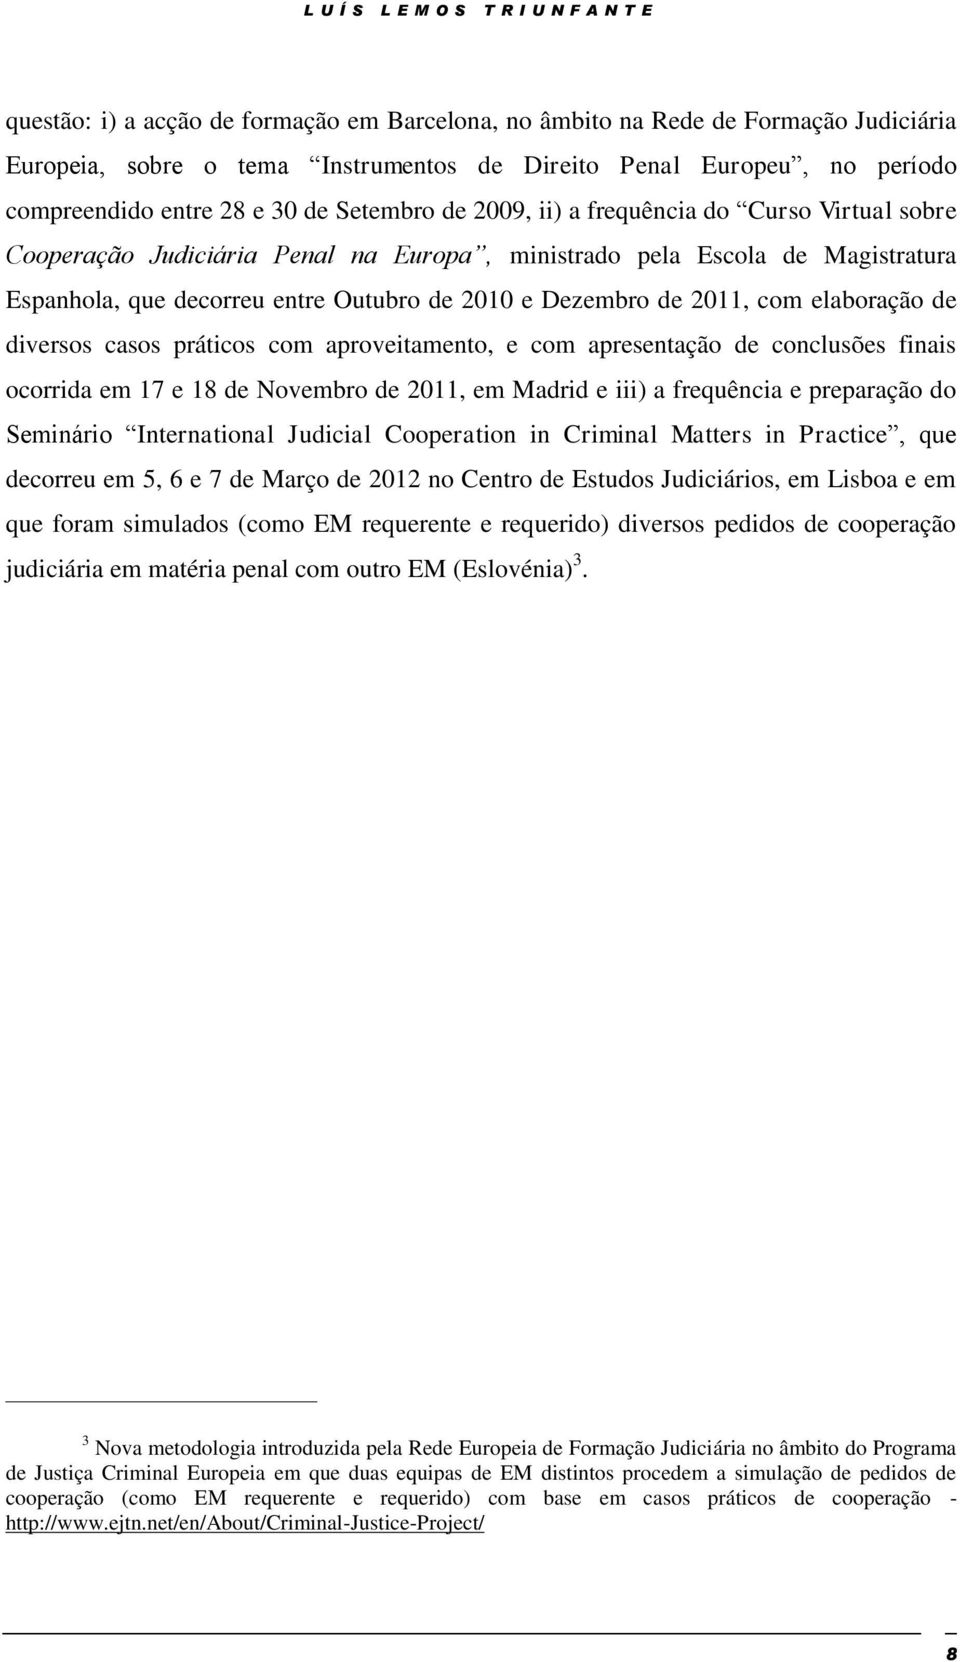 Outubro de 2010 e Dezembro de 2011, com elaboração de diversos casos práticos com aproveitamento, e com apresentação de conclusões finais ocorrida em 17 e 18 de Novembro de 2011, em Madrid e iii) a